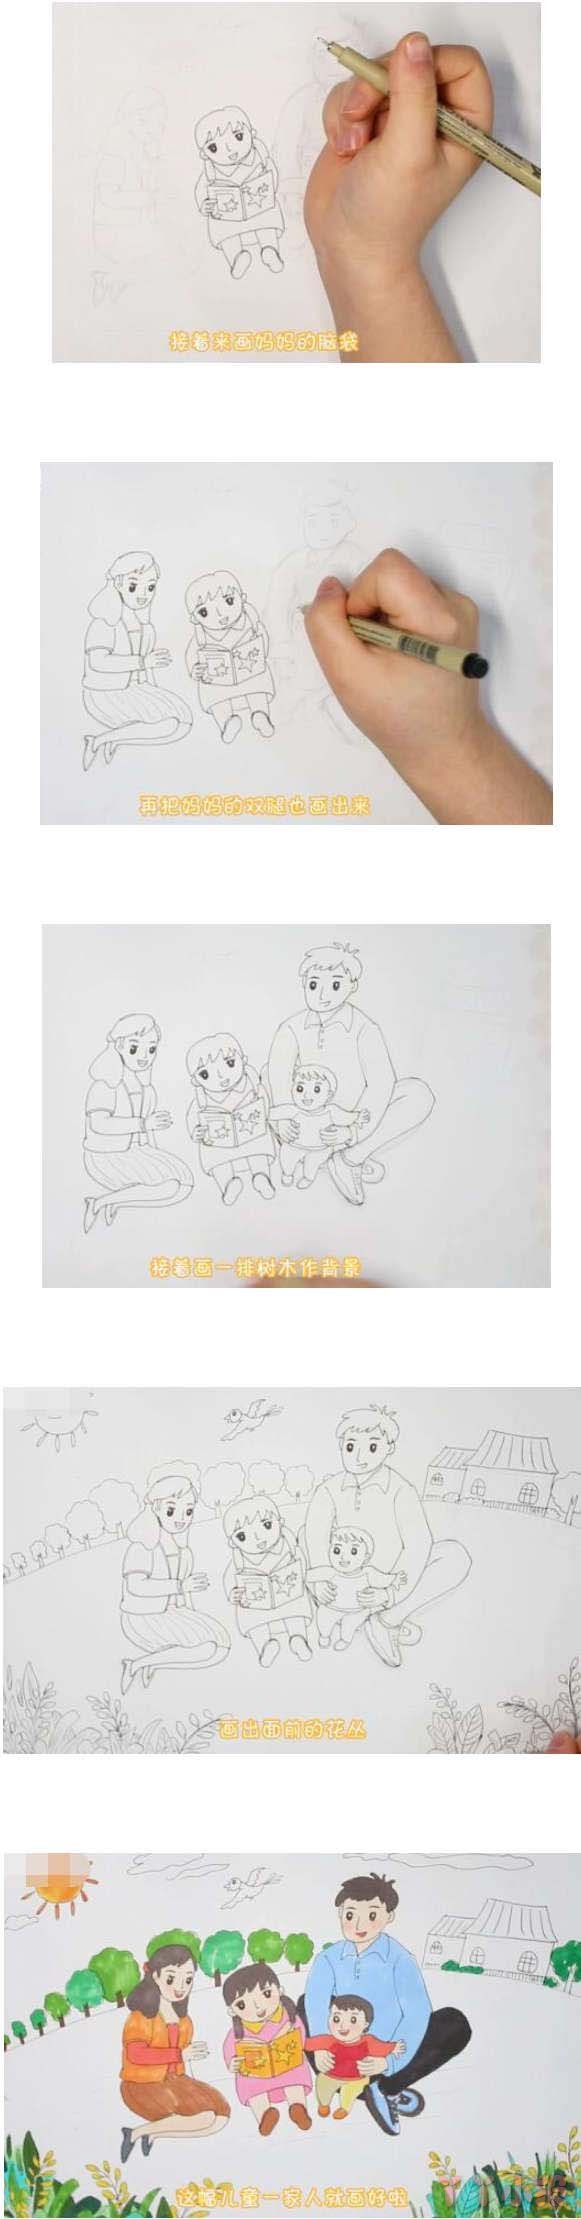 一家人简笔画画法步骤教程手绘涂颜色